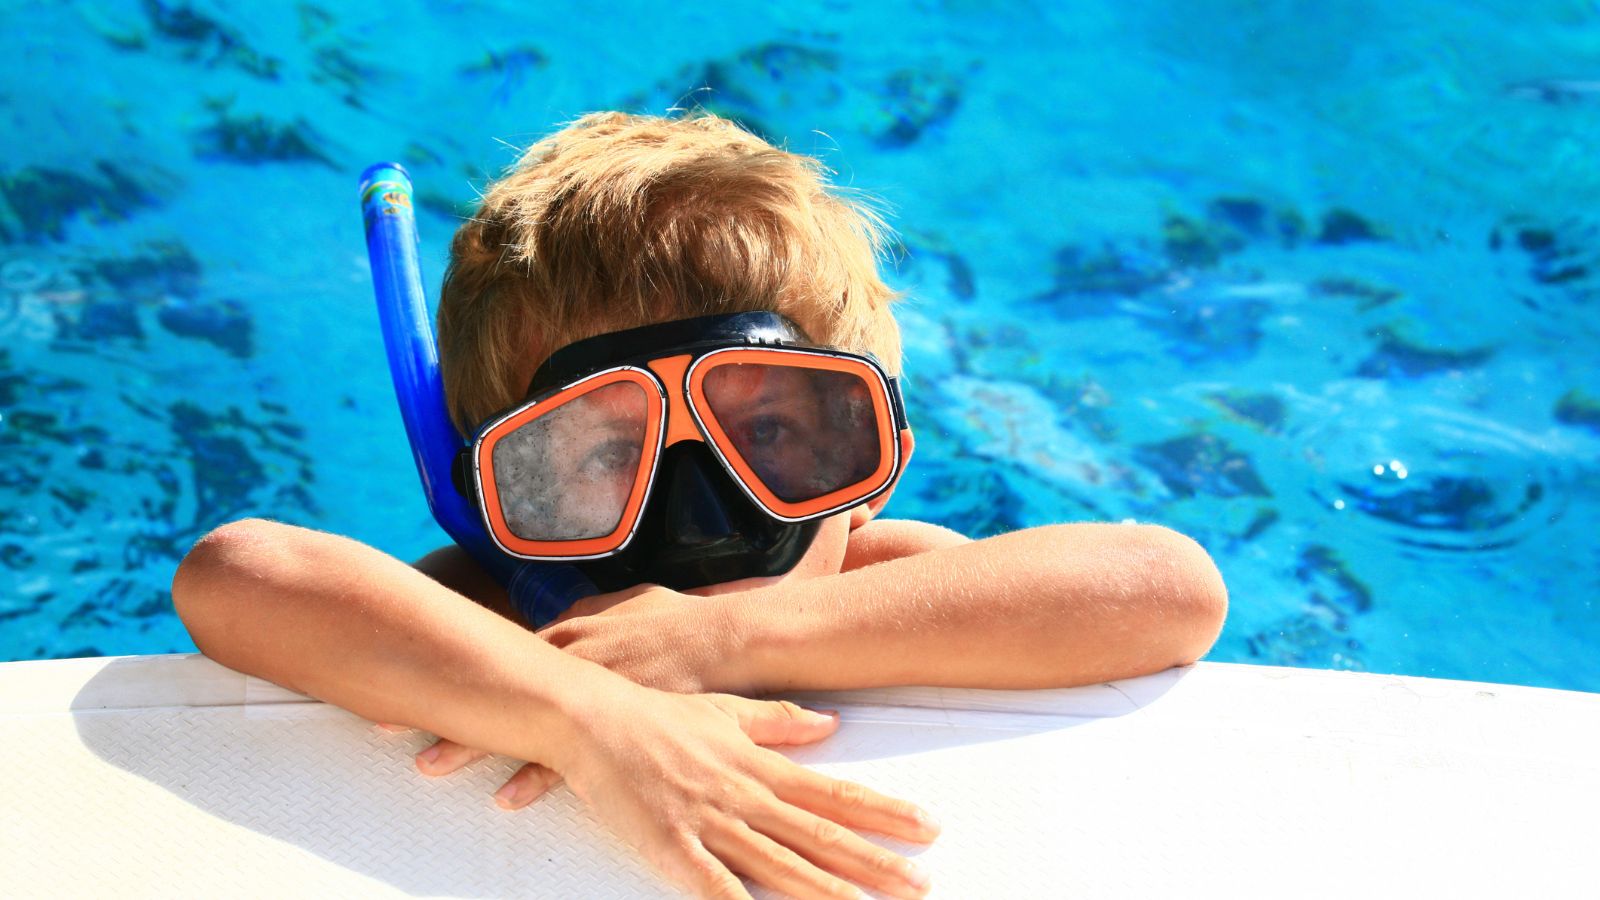 Snorkeling gear for kids (Photo: Shutterstock)